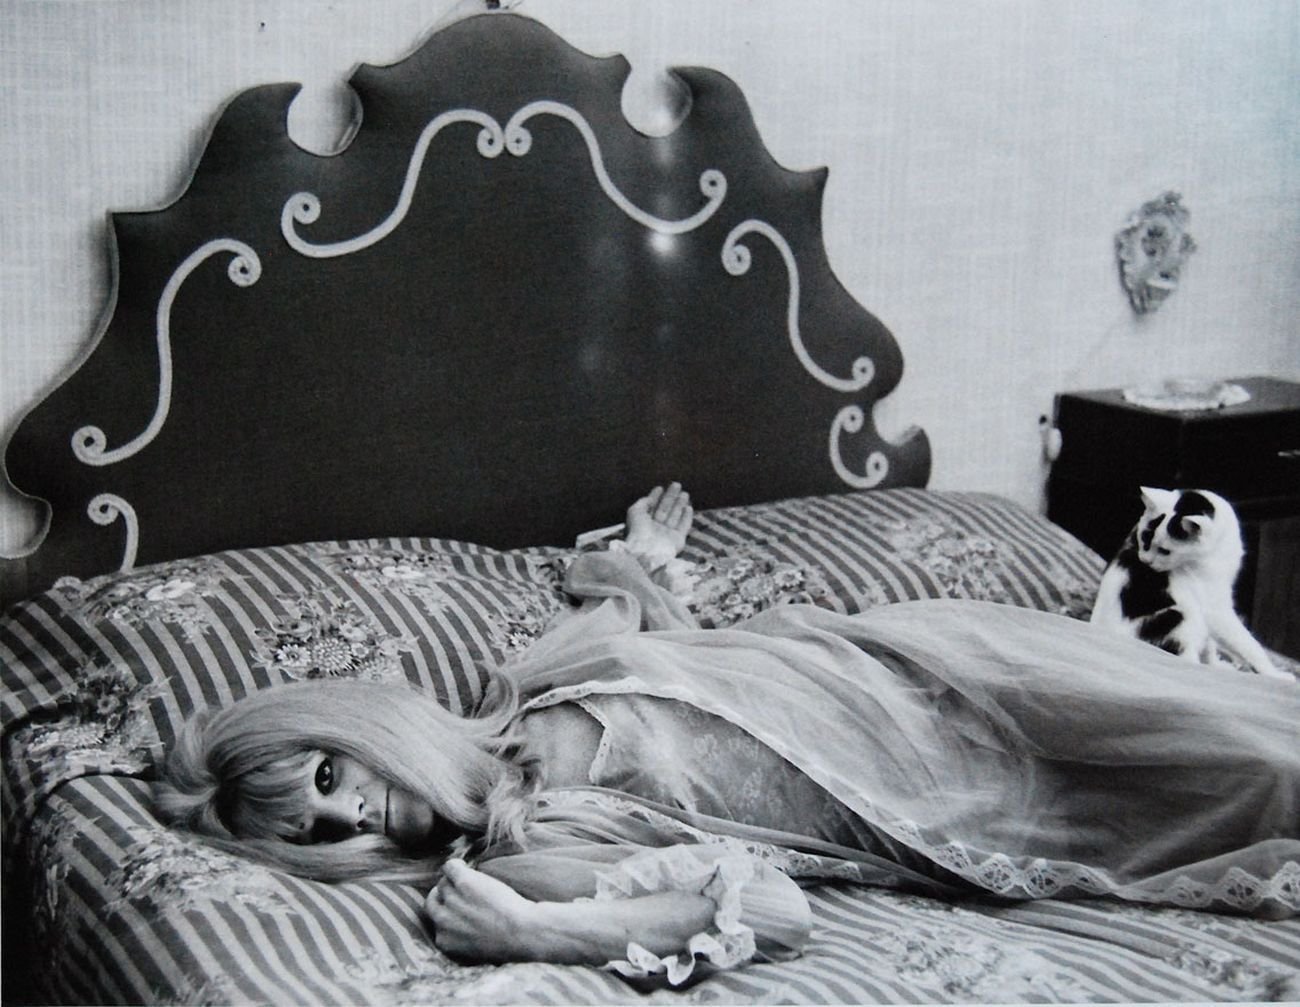 Lisetta Carmi, I travestiti. La Cabiria, 1965 70, cm 24x30 © Lisetta Carmi Martini Ronchetti